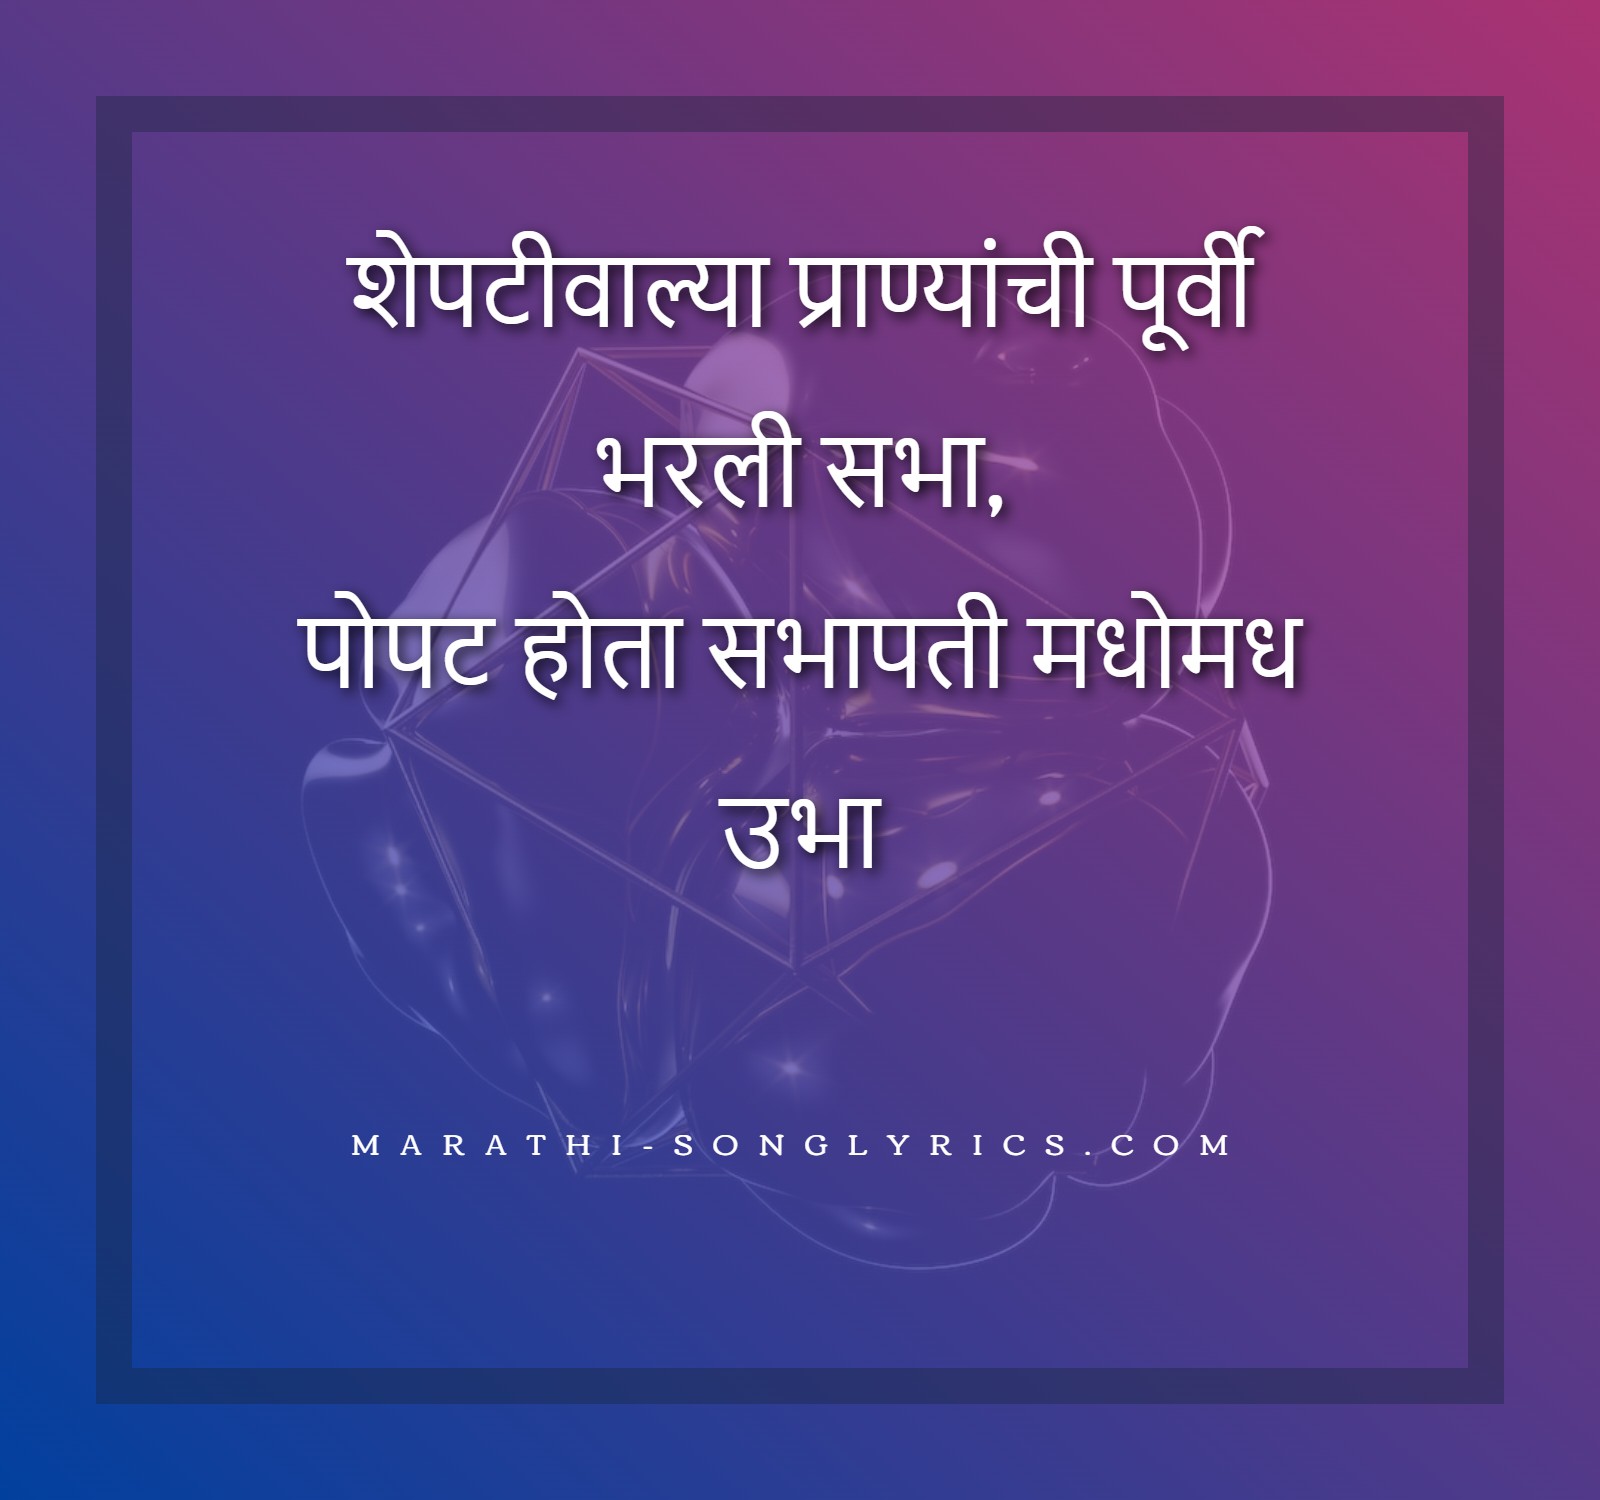 Sheptiwalya Pranyanchi lyrics in Marathi